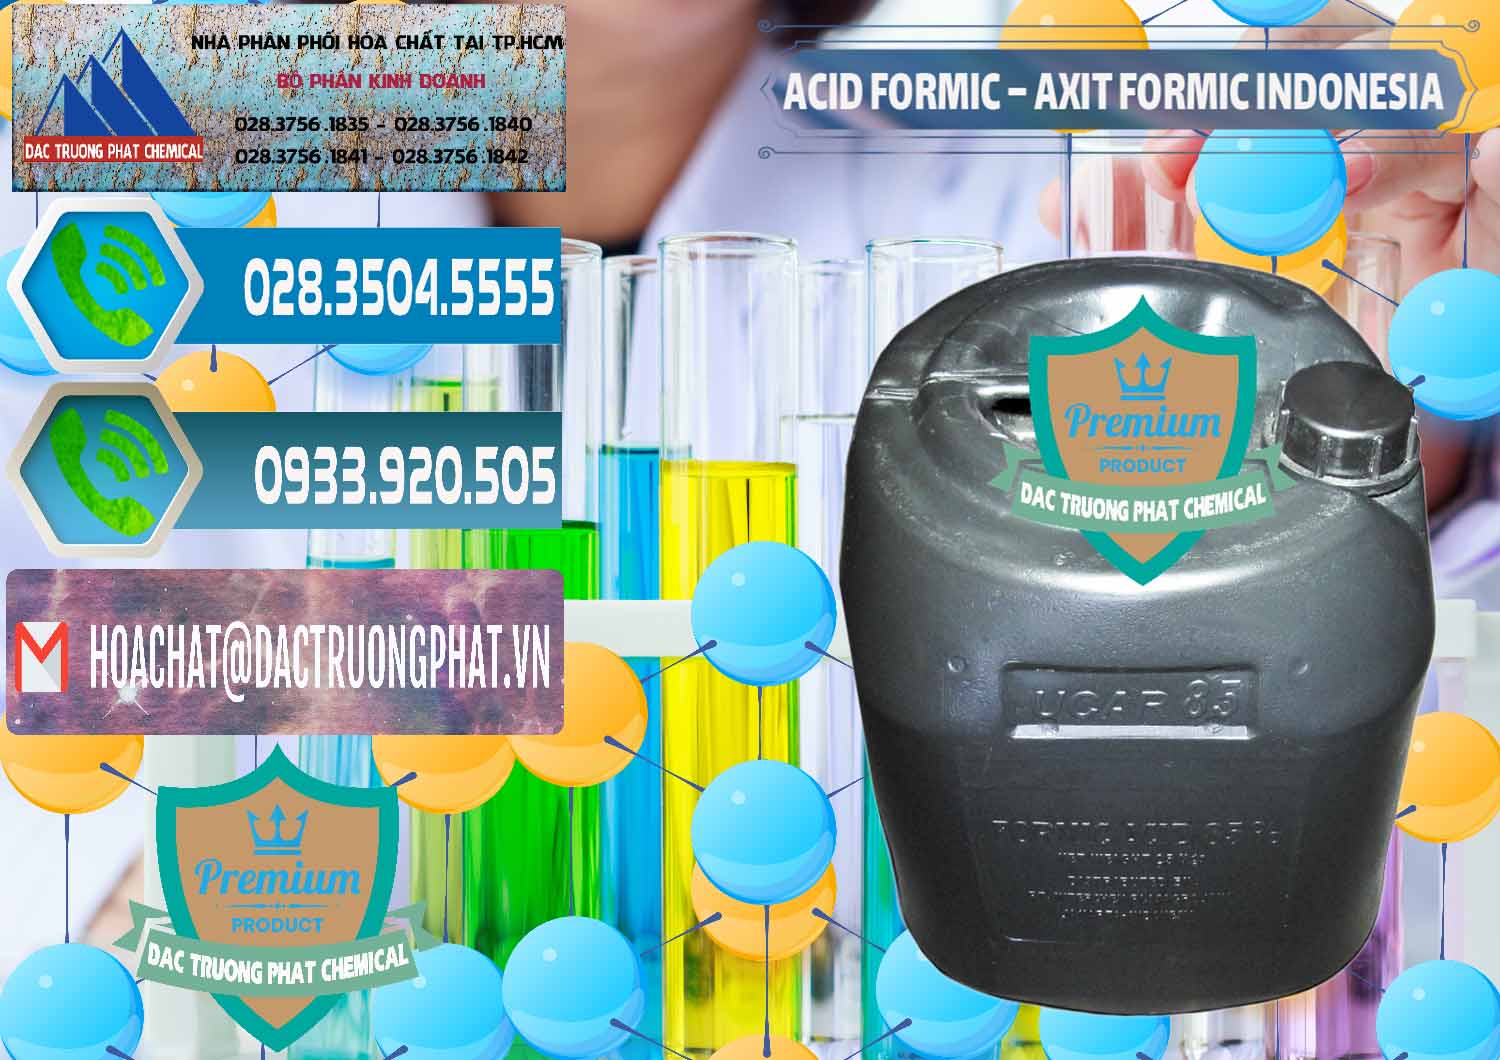 Cty chuyên bán _ cung ứng Acid Formic - Axit Formic Indonesia - 0026 - Đơn vị chuyên phân phối _ nhập khẩu hóa chất tại TP.HCM - congtyhoachat.net